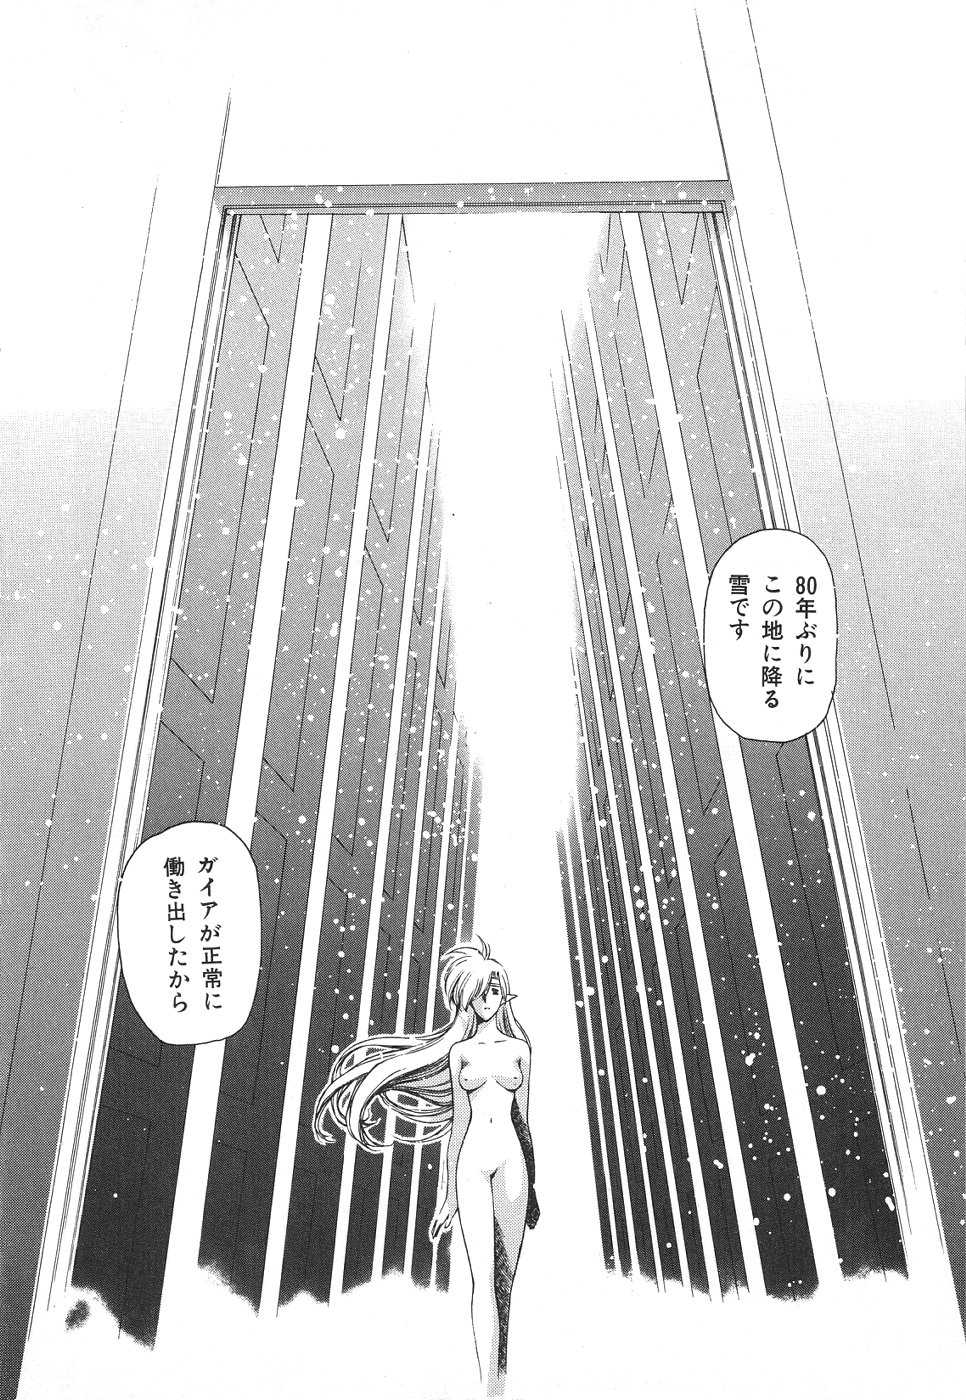 [Urushihara Satoshi] Chirality To The Promised Land Vol. 3 [うるし原智志] キラリティ3